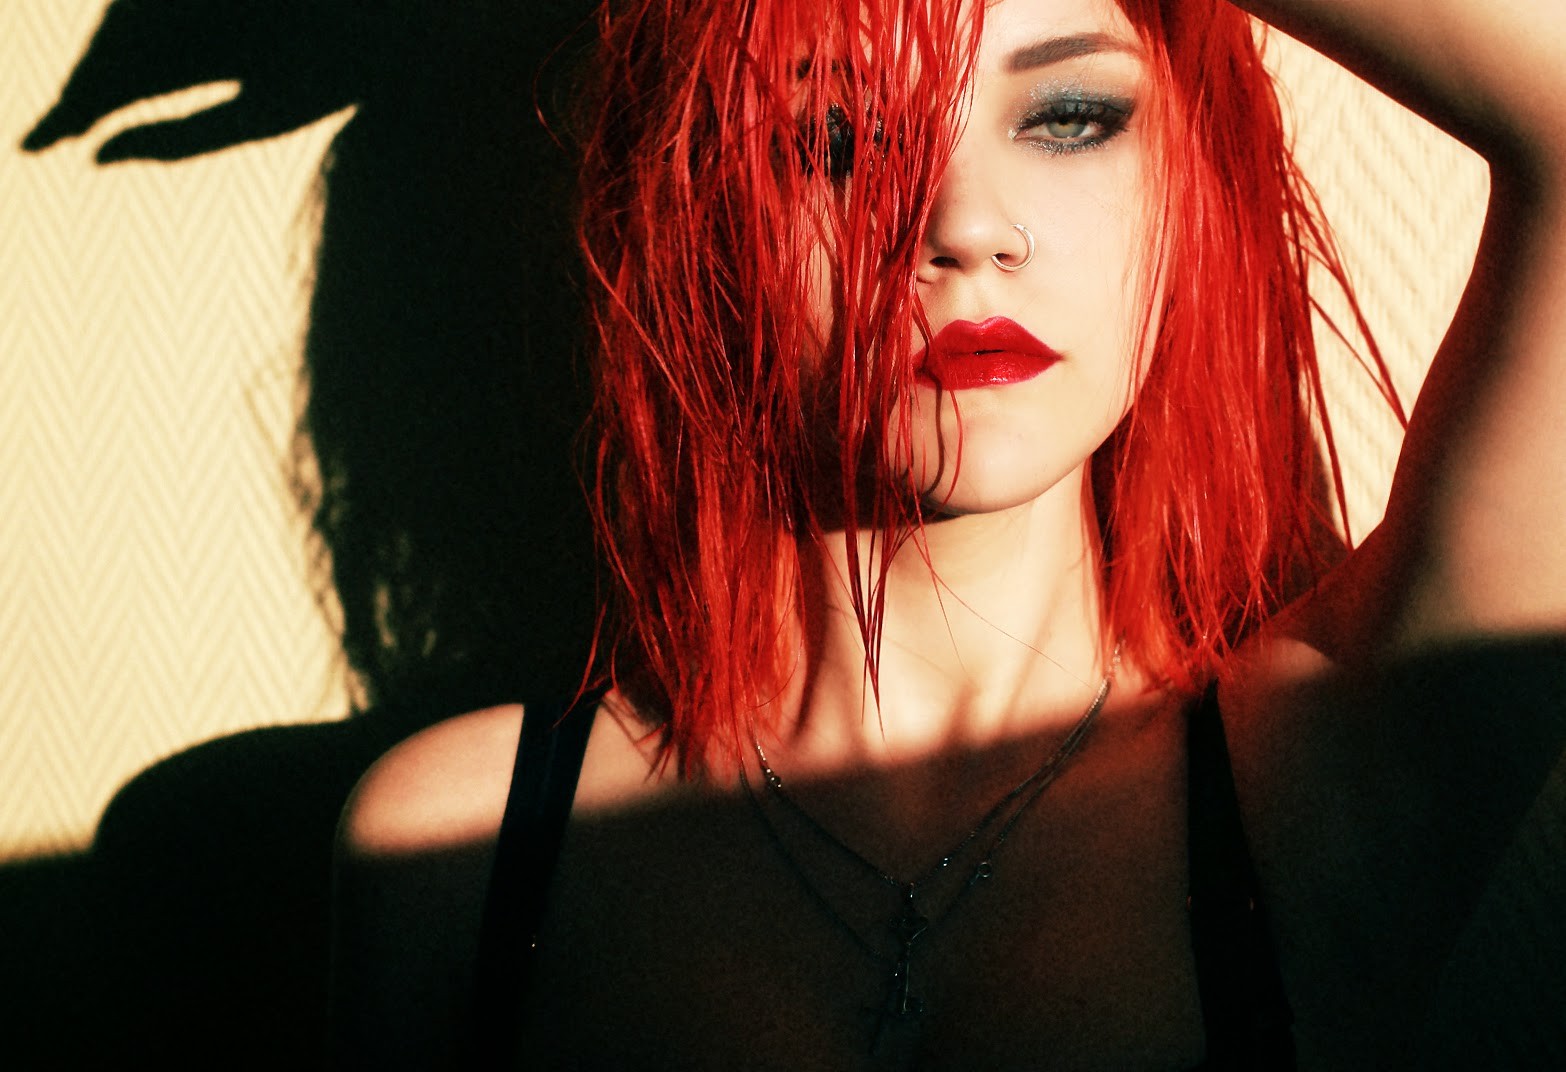 redhead women sensual gaze aleksandra zenibyfajnie wydrych Wallpaper